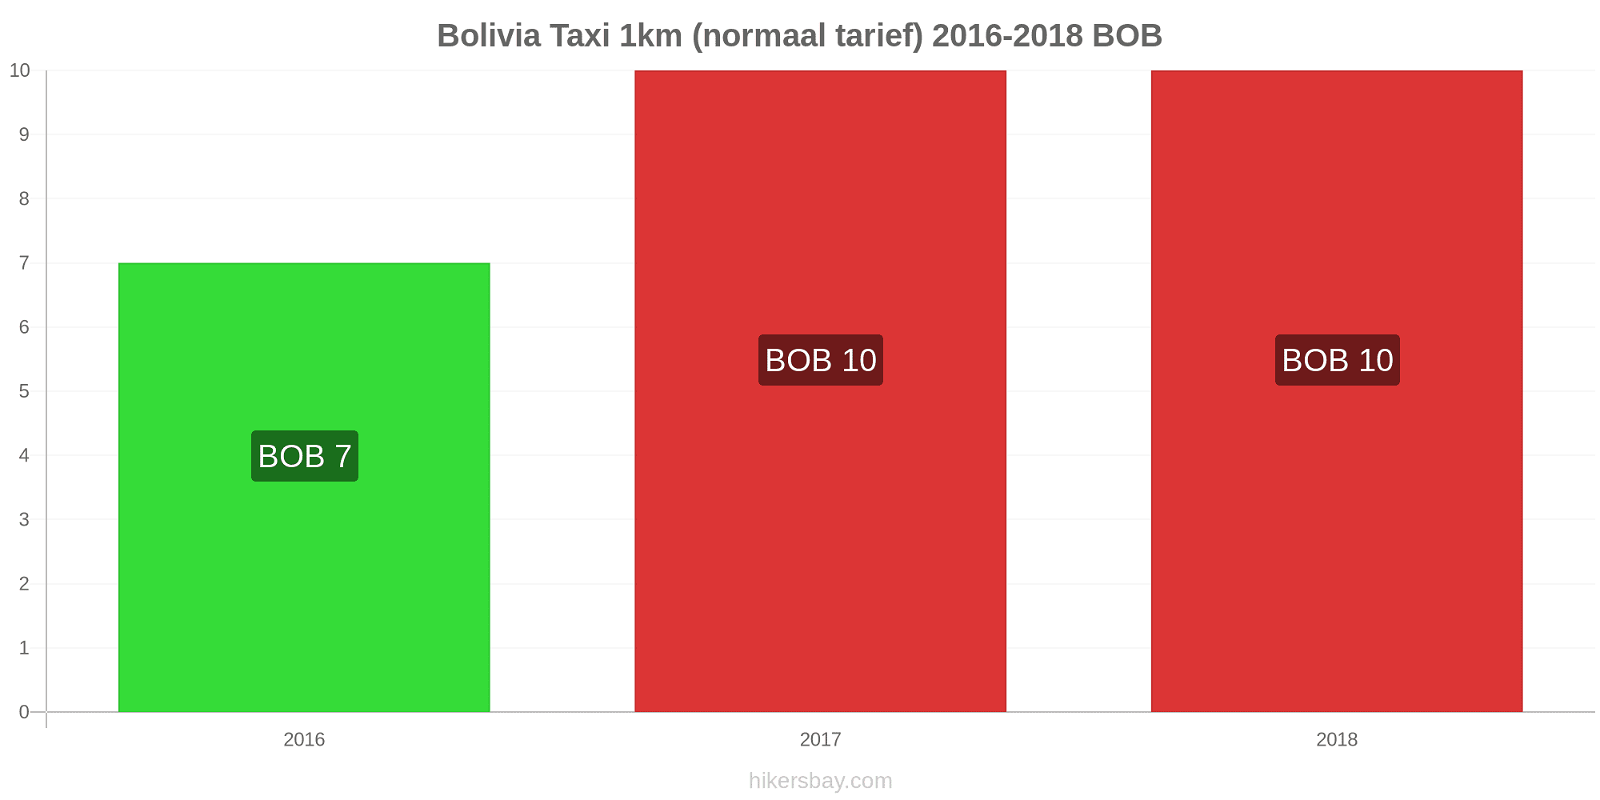 Bolivia prijswijzigingen Taxi 1km (normaal tarief) hikersbay.com